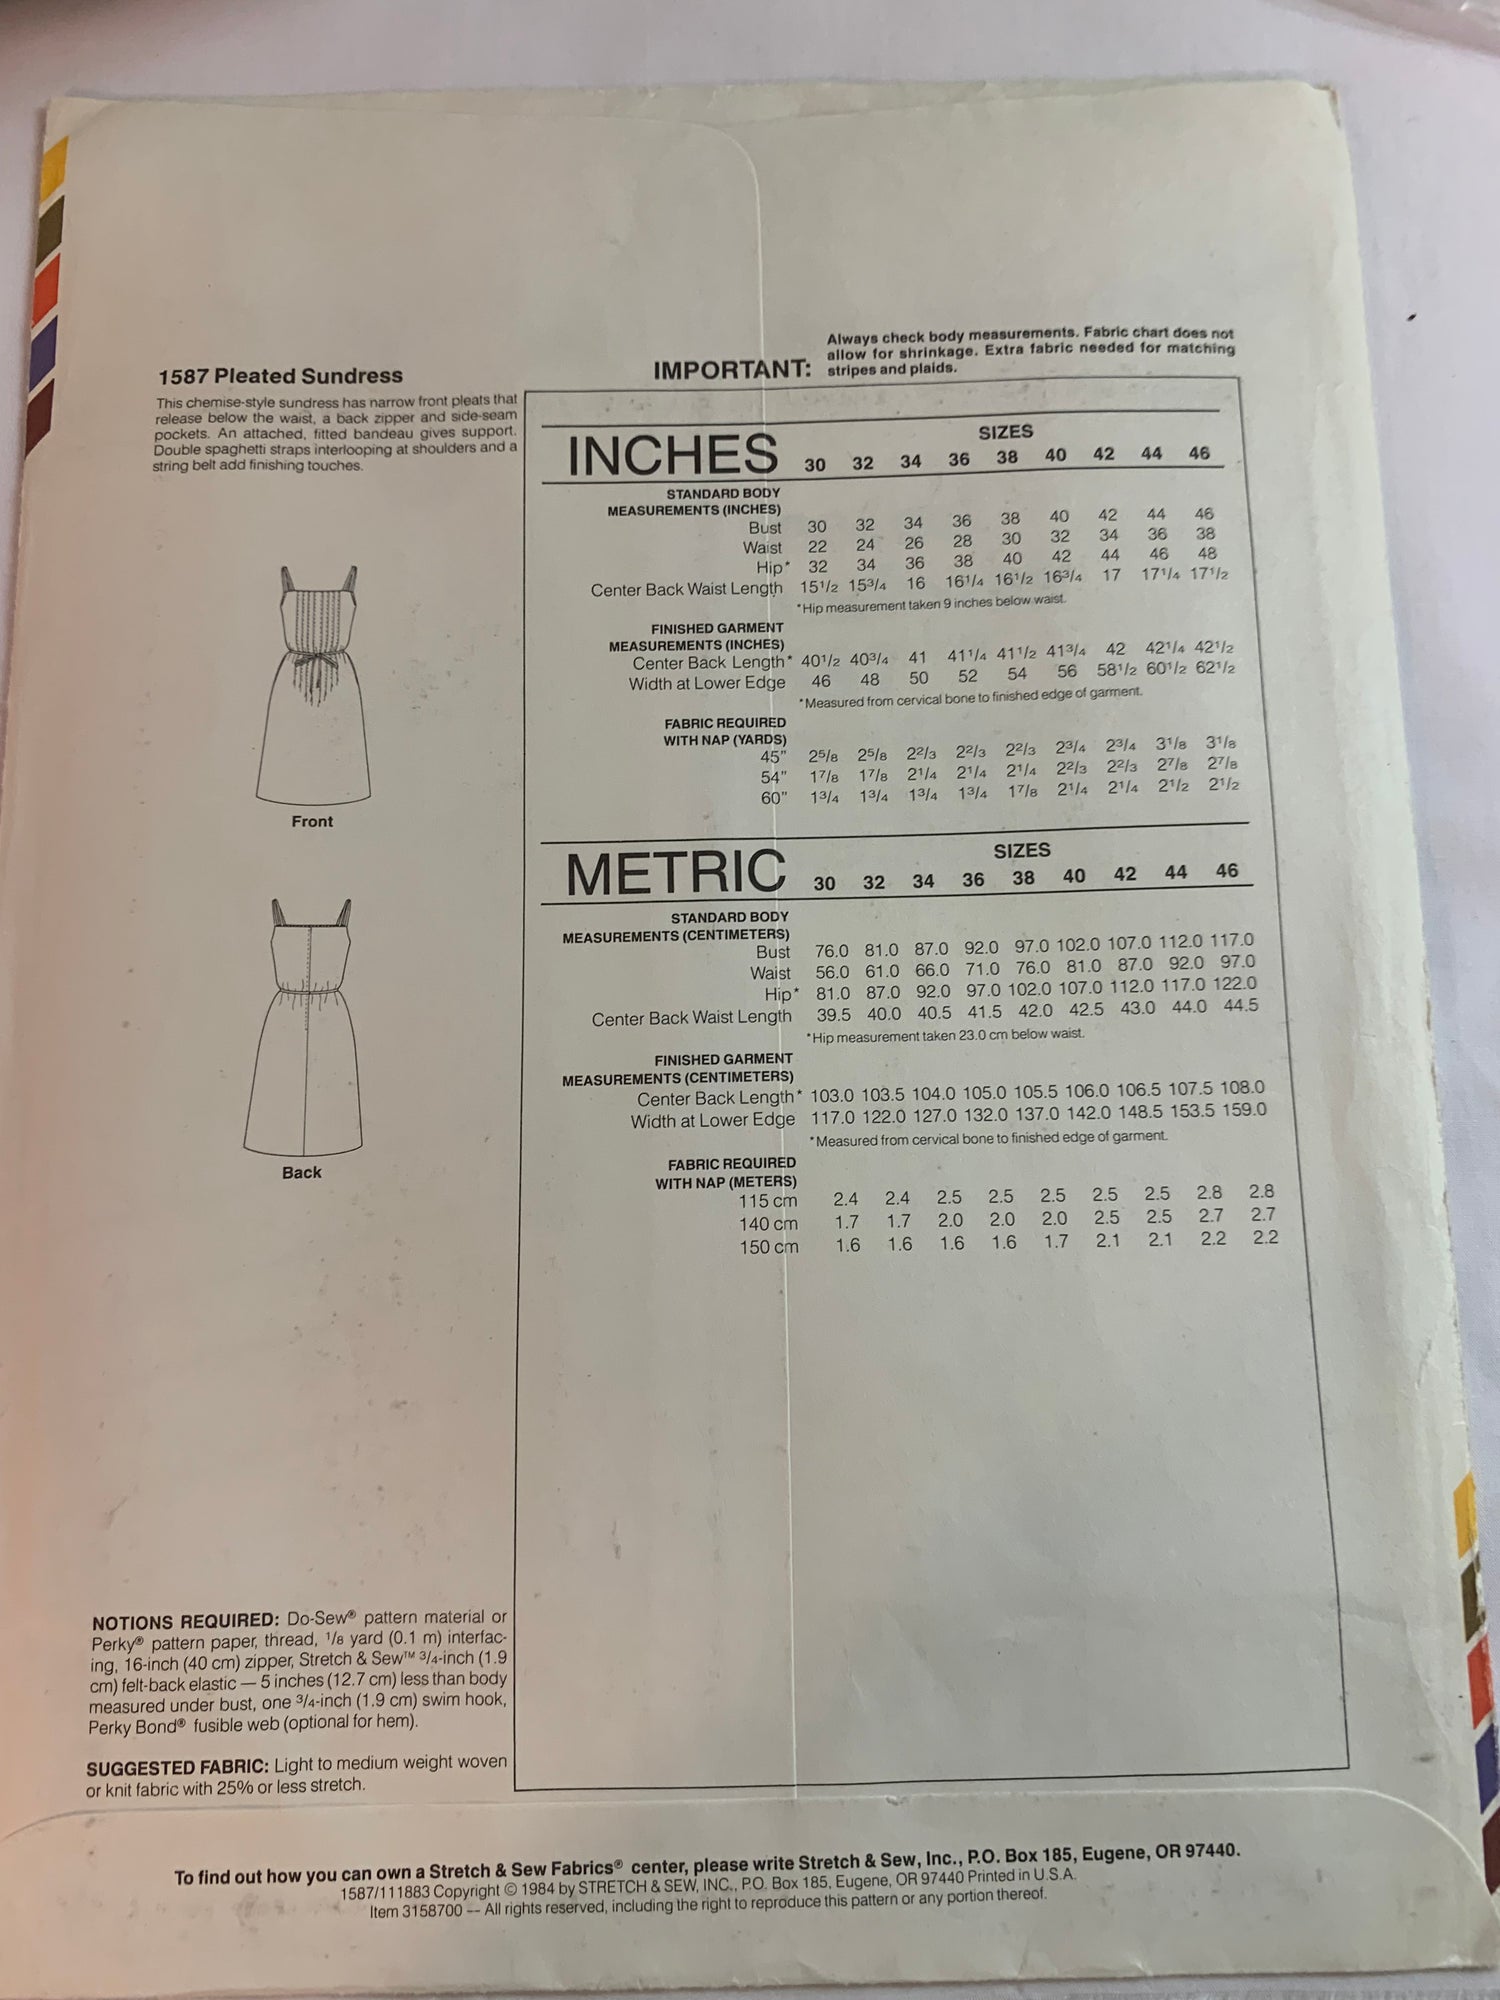 Vintage Simplicity Pattern 6194 Misses' / Women's Dress Size 42 Bust 4 –